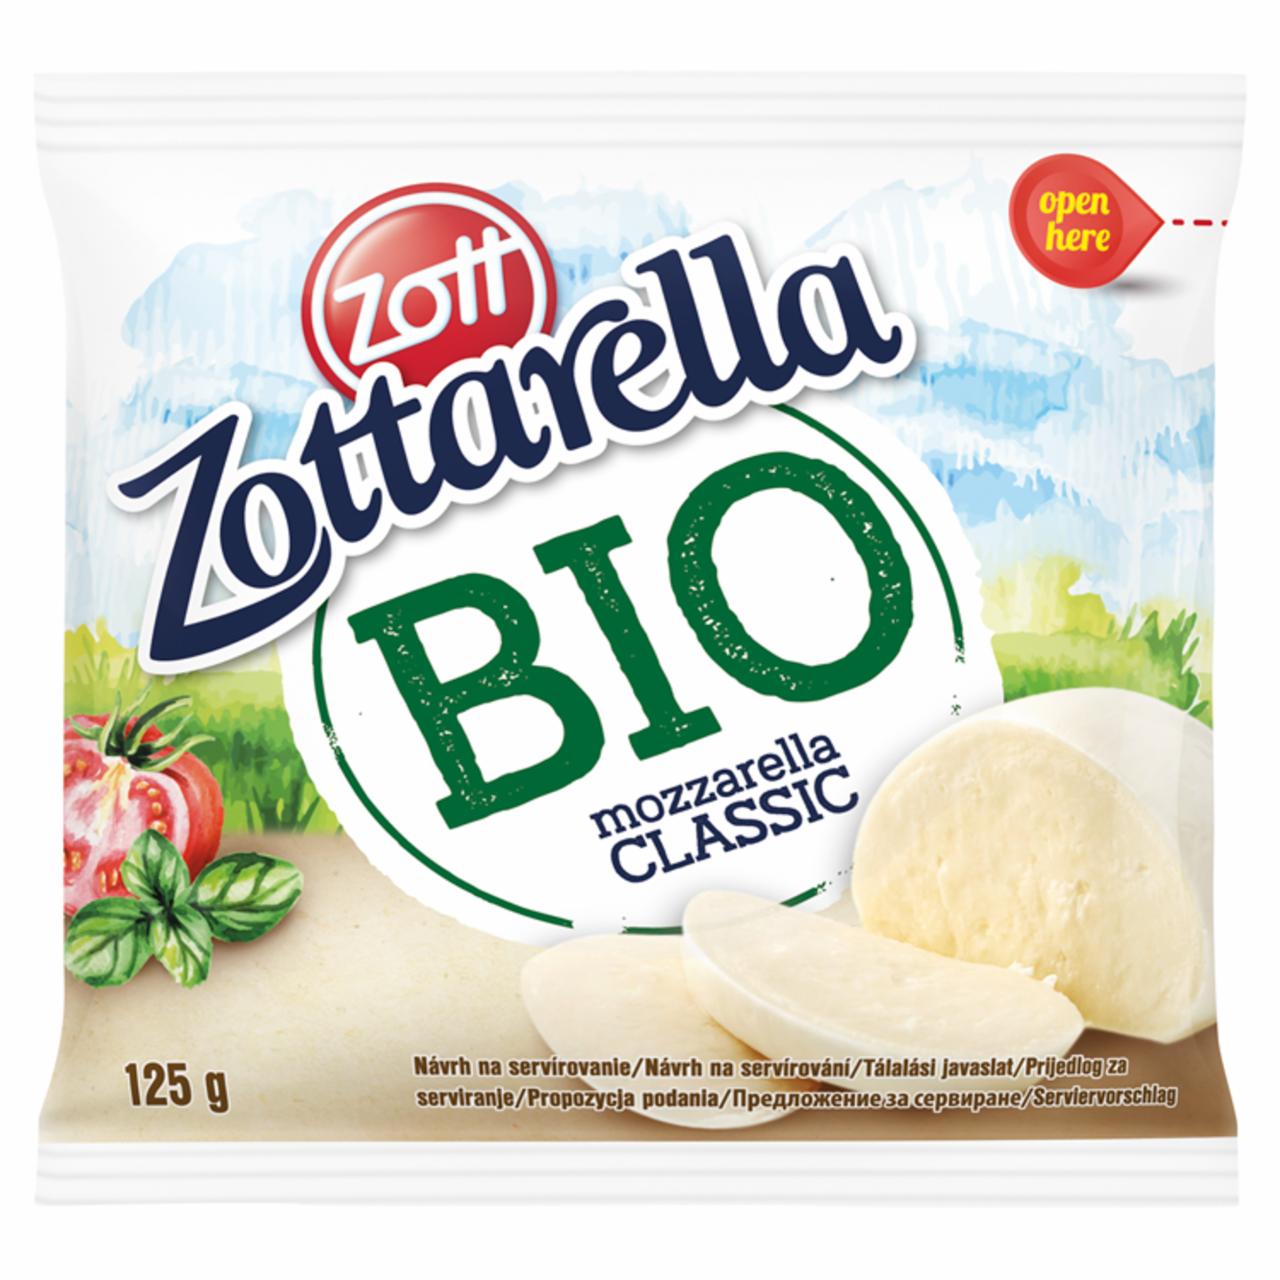 Képek - Zott Zottarella zsíros, hevített-gyúrt lágy BIO mozzarella sajt sós lében 125 g